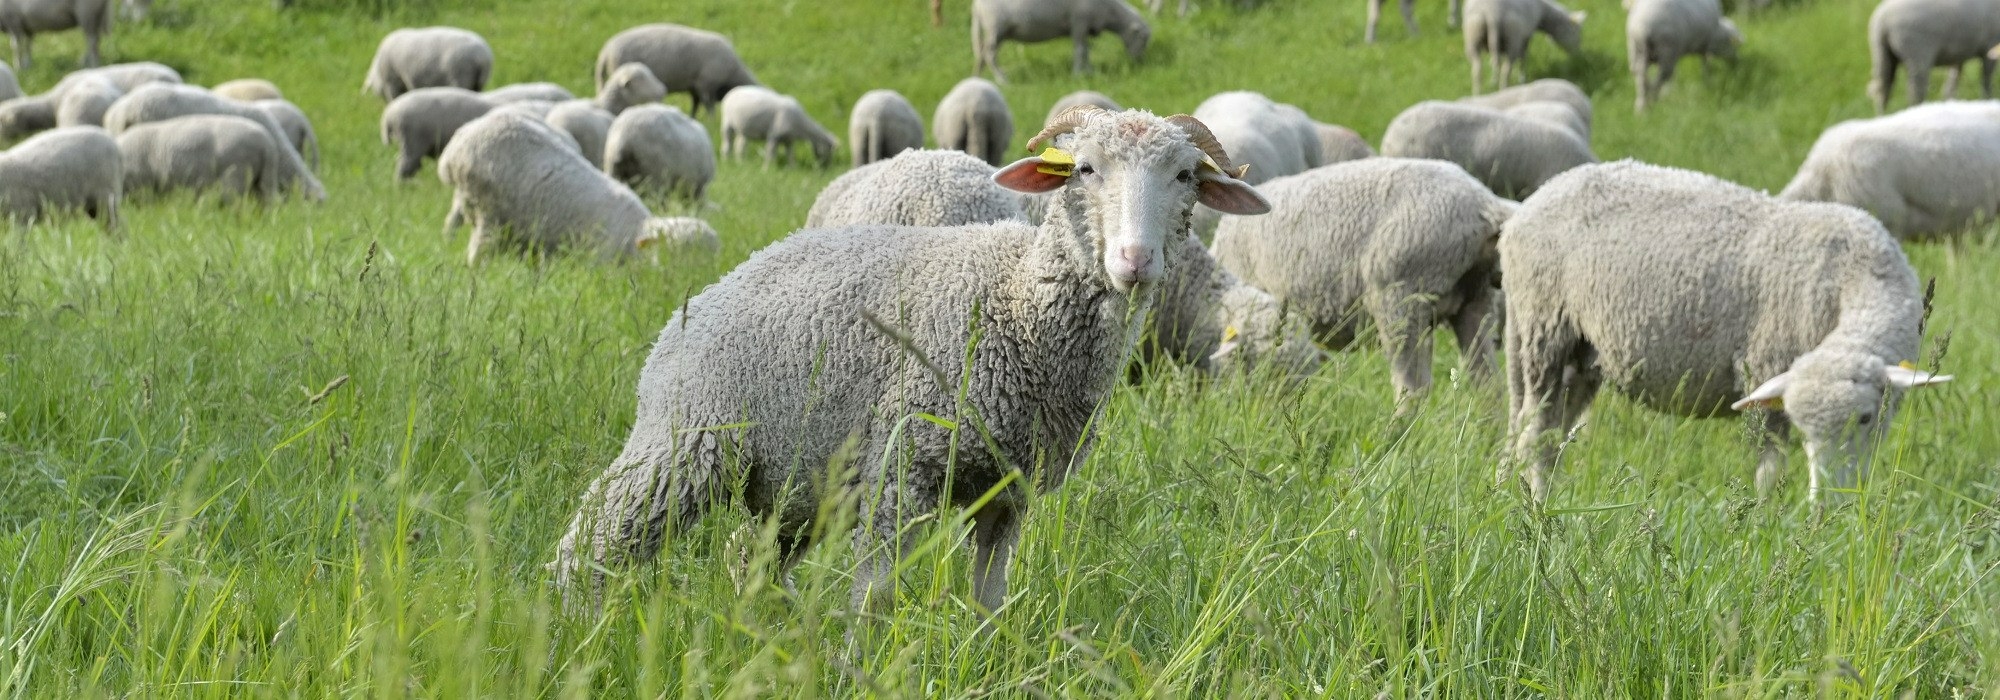 Élevage ovin, avicole et porcin dans les Hautes-Alpes. L'exploitation se trouve à Upaix, petit village situé entre Gap et Sisteron.